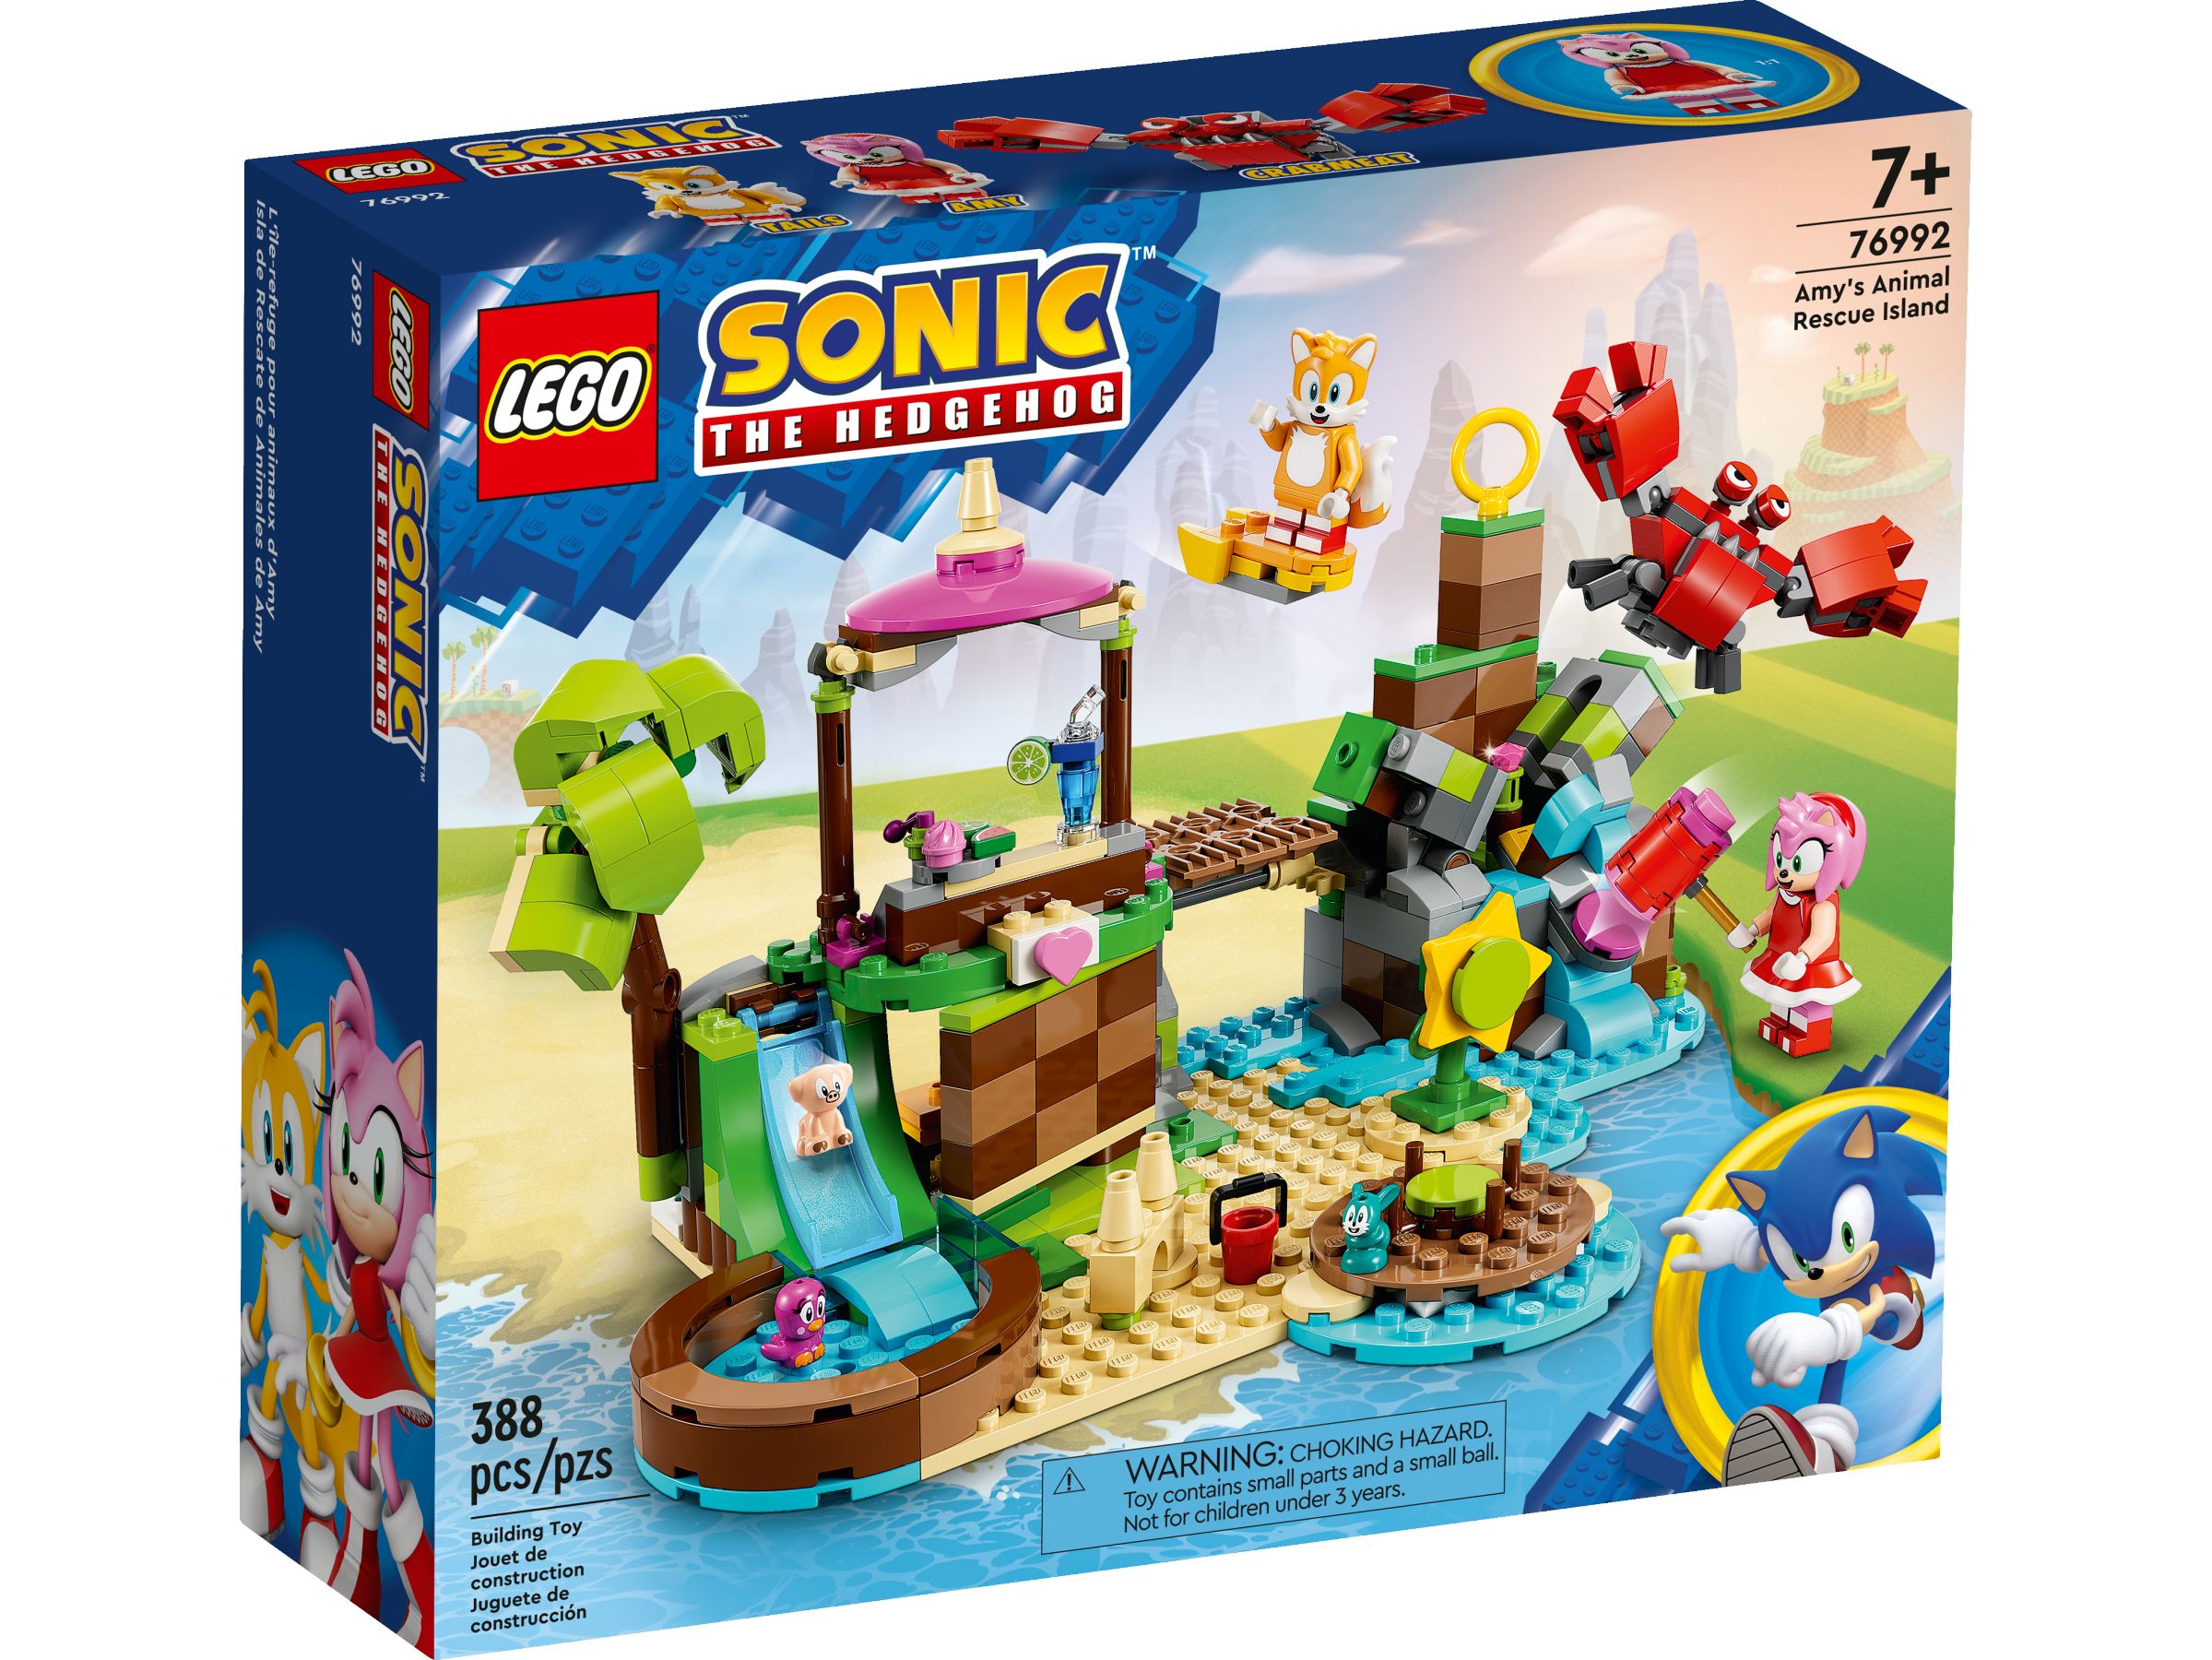 LEGO Sonic the Hedgehog 76992 Amys Tierrettungsinsel LEGO_76992_Box1_v39.jpg